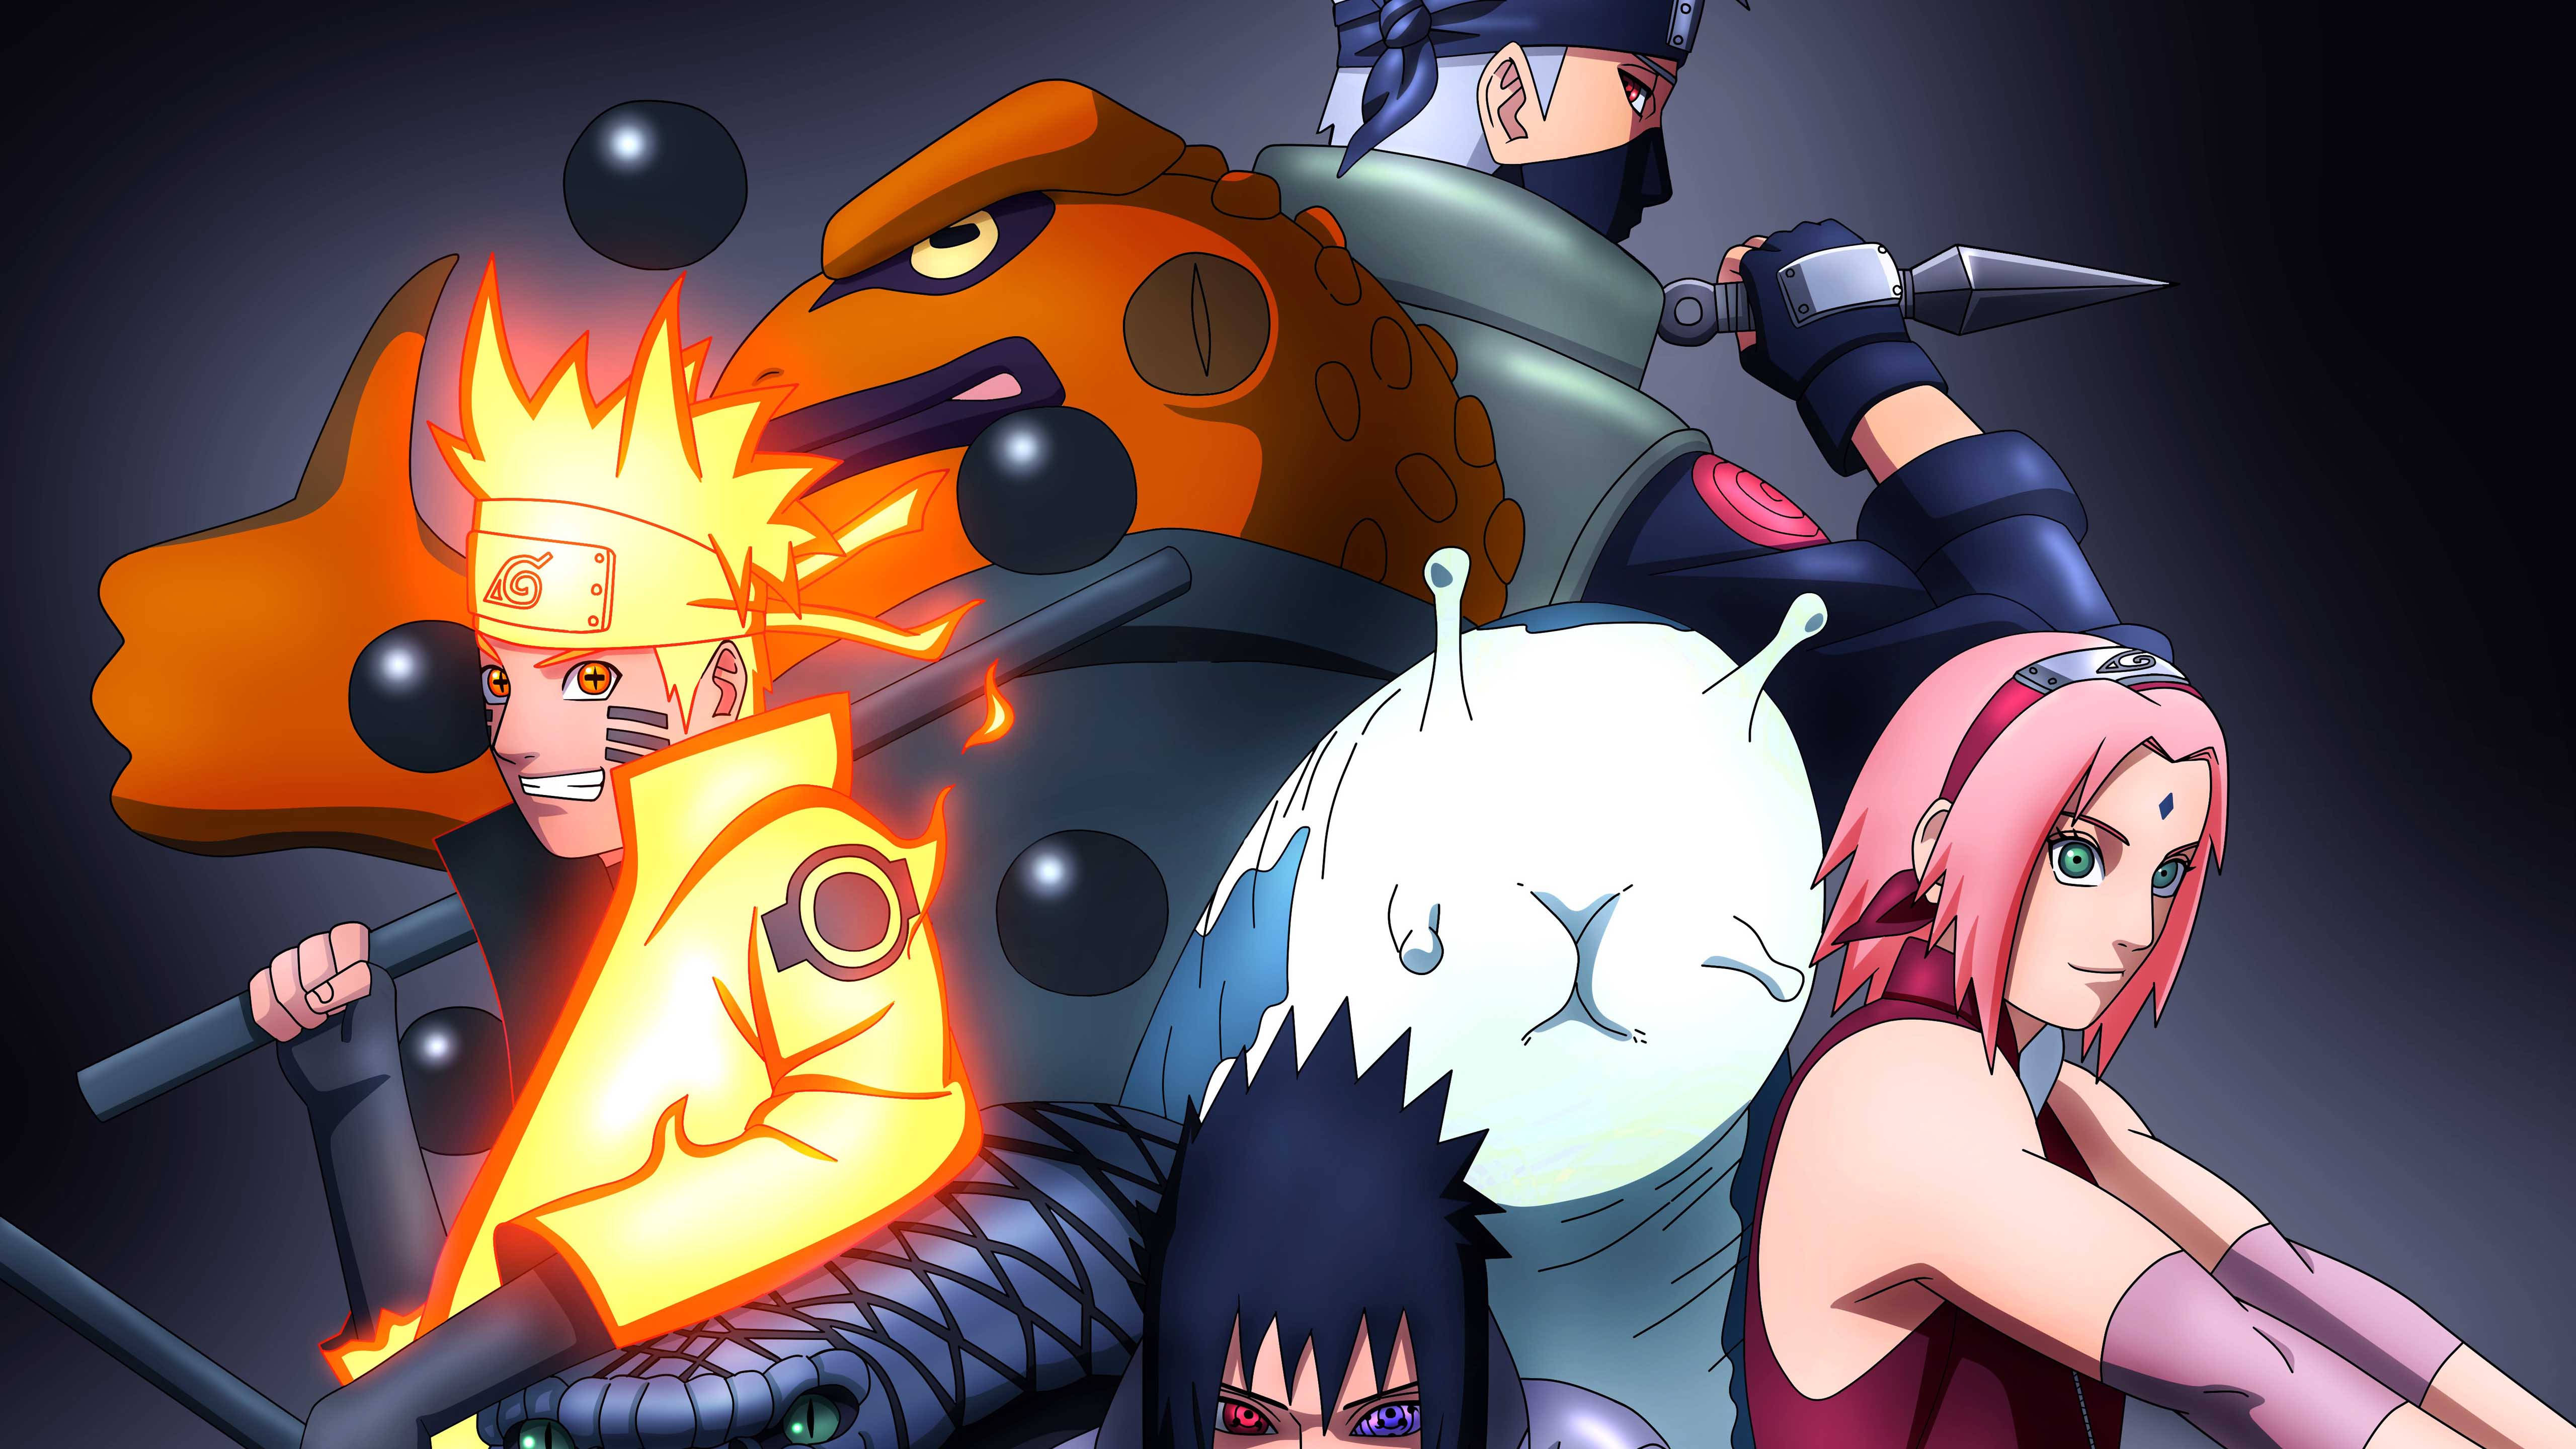 Thưởng thức bộ sưu tập hình nền 4K của Gamakichi và Katsuyu trong Naruto! Hình ảnh rõ nét và sắc nét, chi tiết chính xác và đầy màu sắc, tạo nên một không gian sống động và độc đáo. Hãy trang trí màn hình của bạn với bộ sưu tập hình nền Naruto 4K Gamakichi và Katsuyu, và trải nghiệm thế giới Naruto càng thêm phong phú.